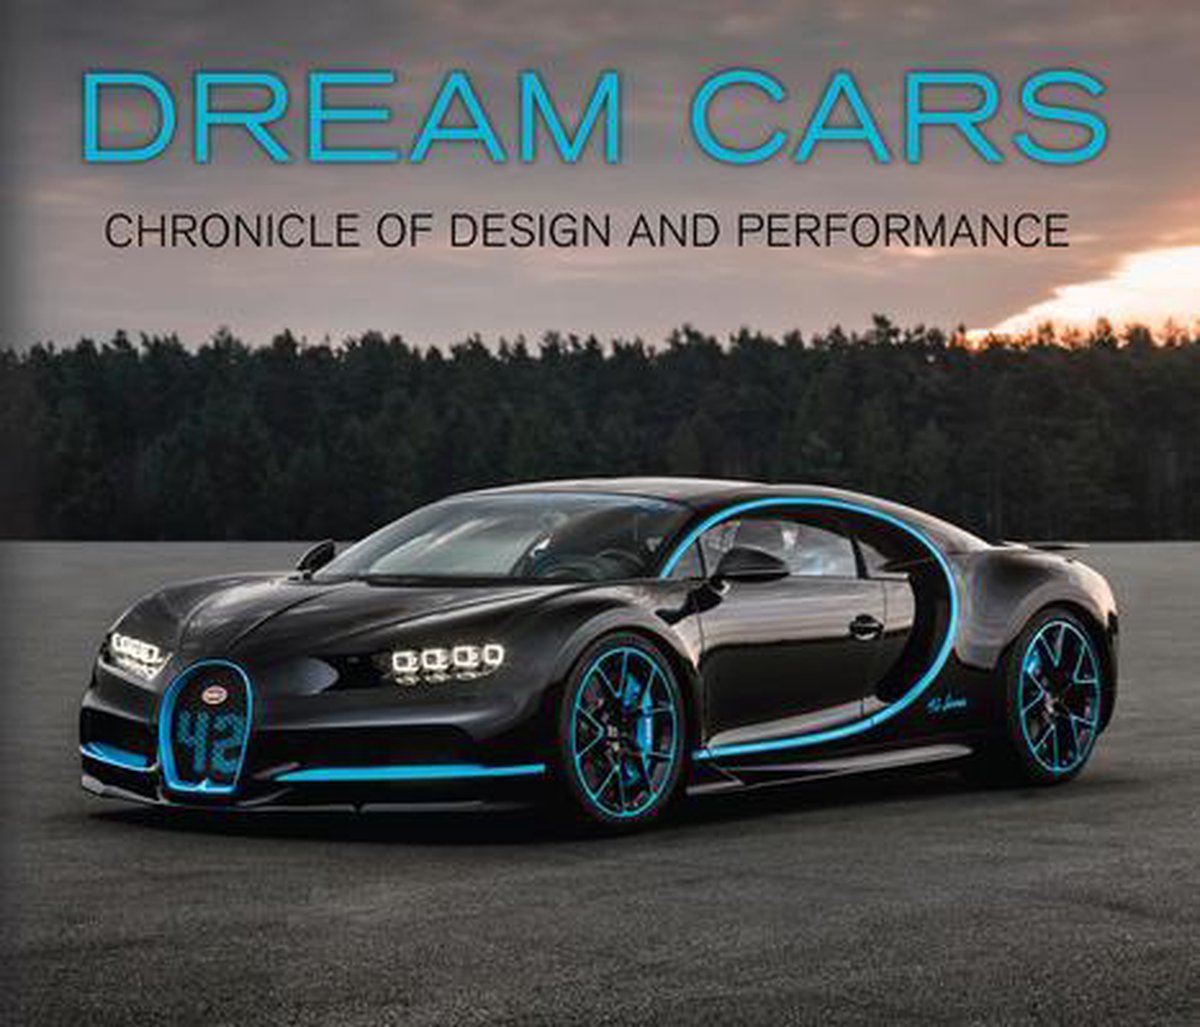 Dream car